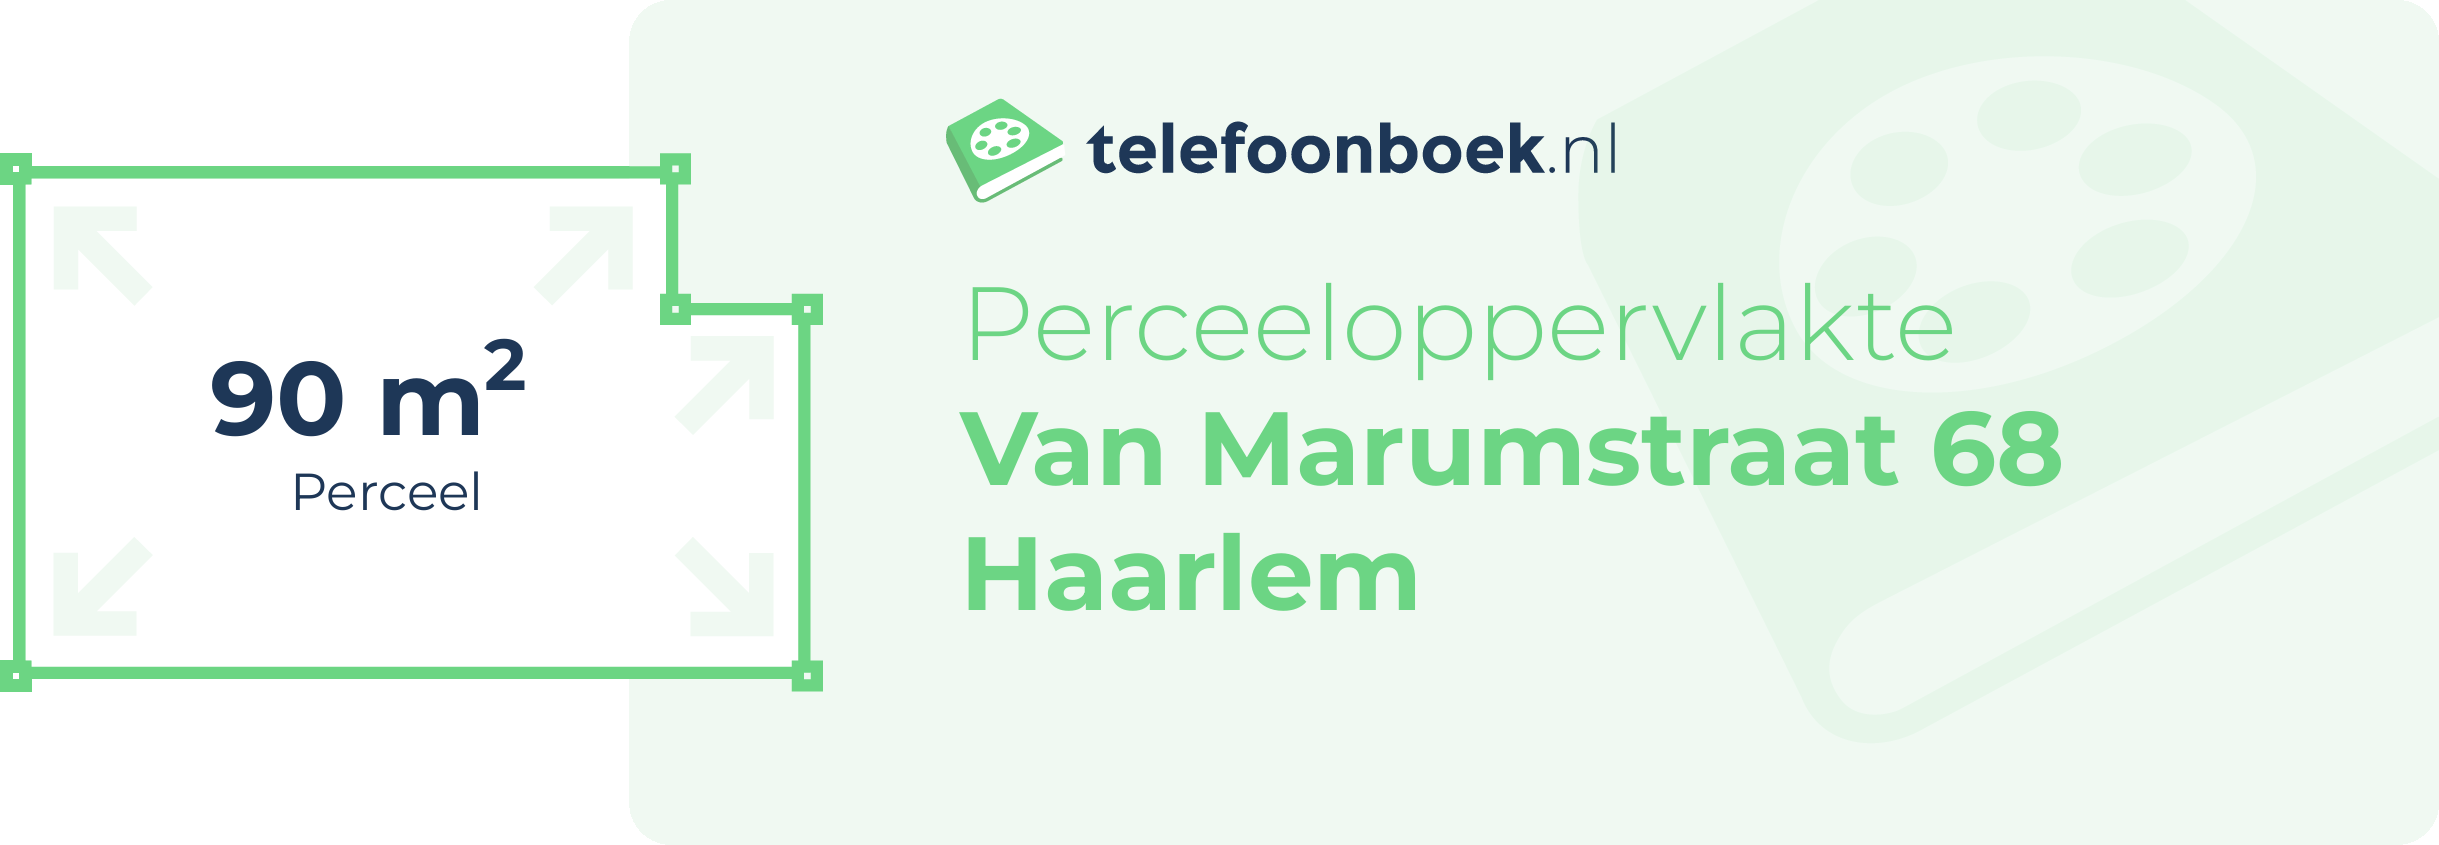 Perceeloppervlakte Van Marumstraat 68 Haarlem